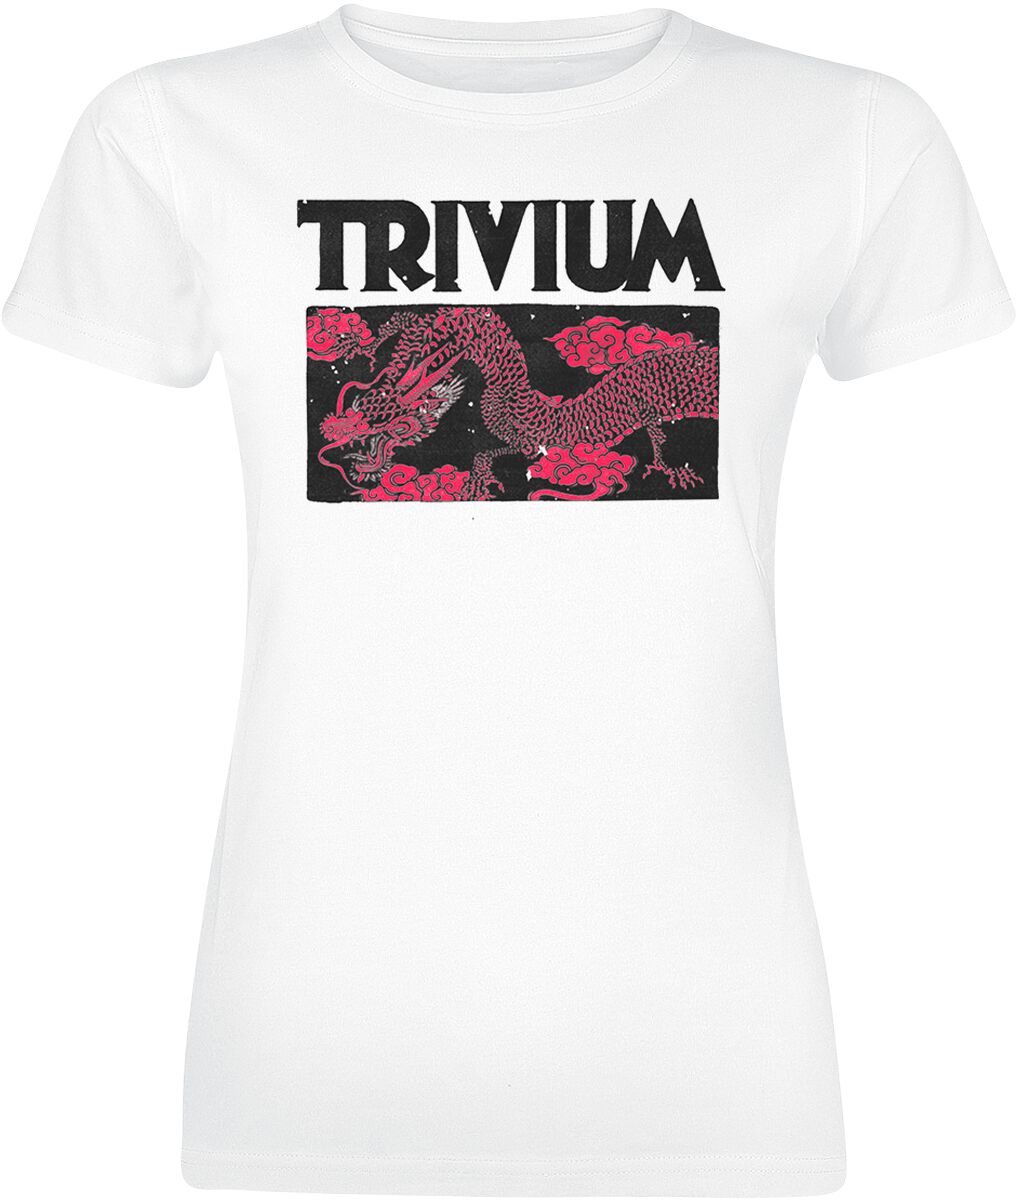 T-Shirt Manches courtes de Trivium - Double Dragon - L à XXL - pour Femme - blanc